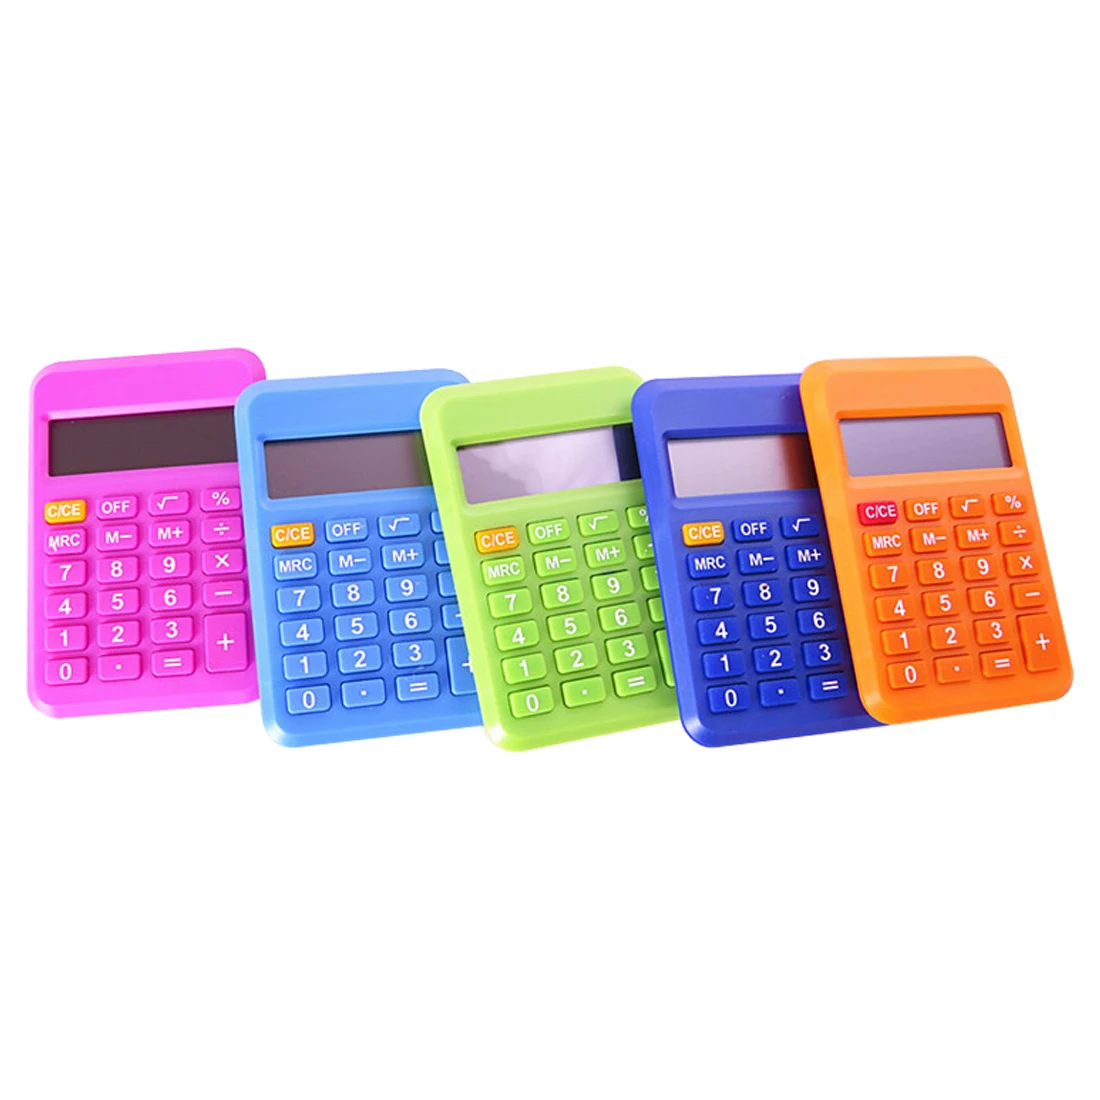 NOYOKERE, хорошая, студенческий мини электронный калькулятор, карамельный цвет, расчетные офисные принадлежности, подарок 9*6 мм, размер, случайный цвет